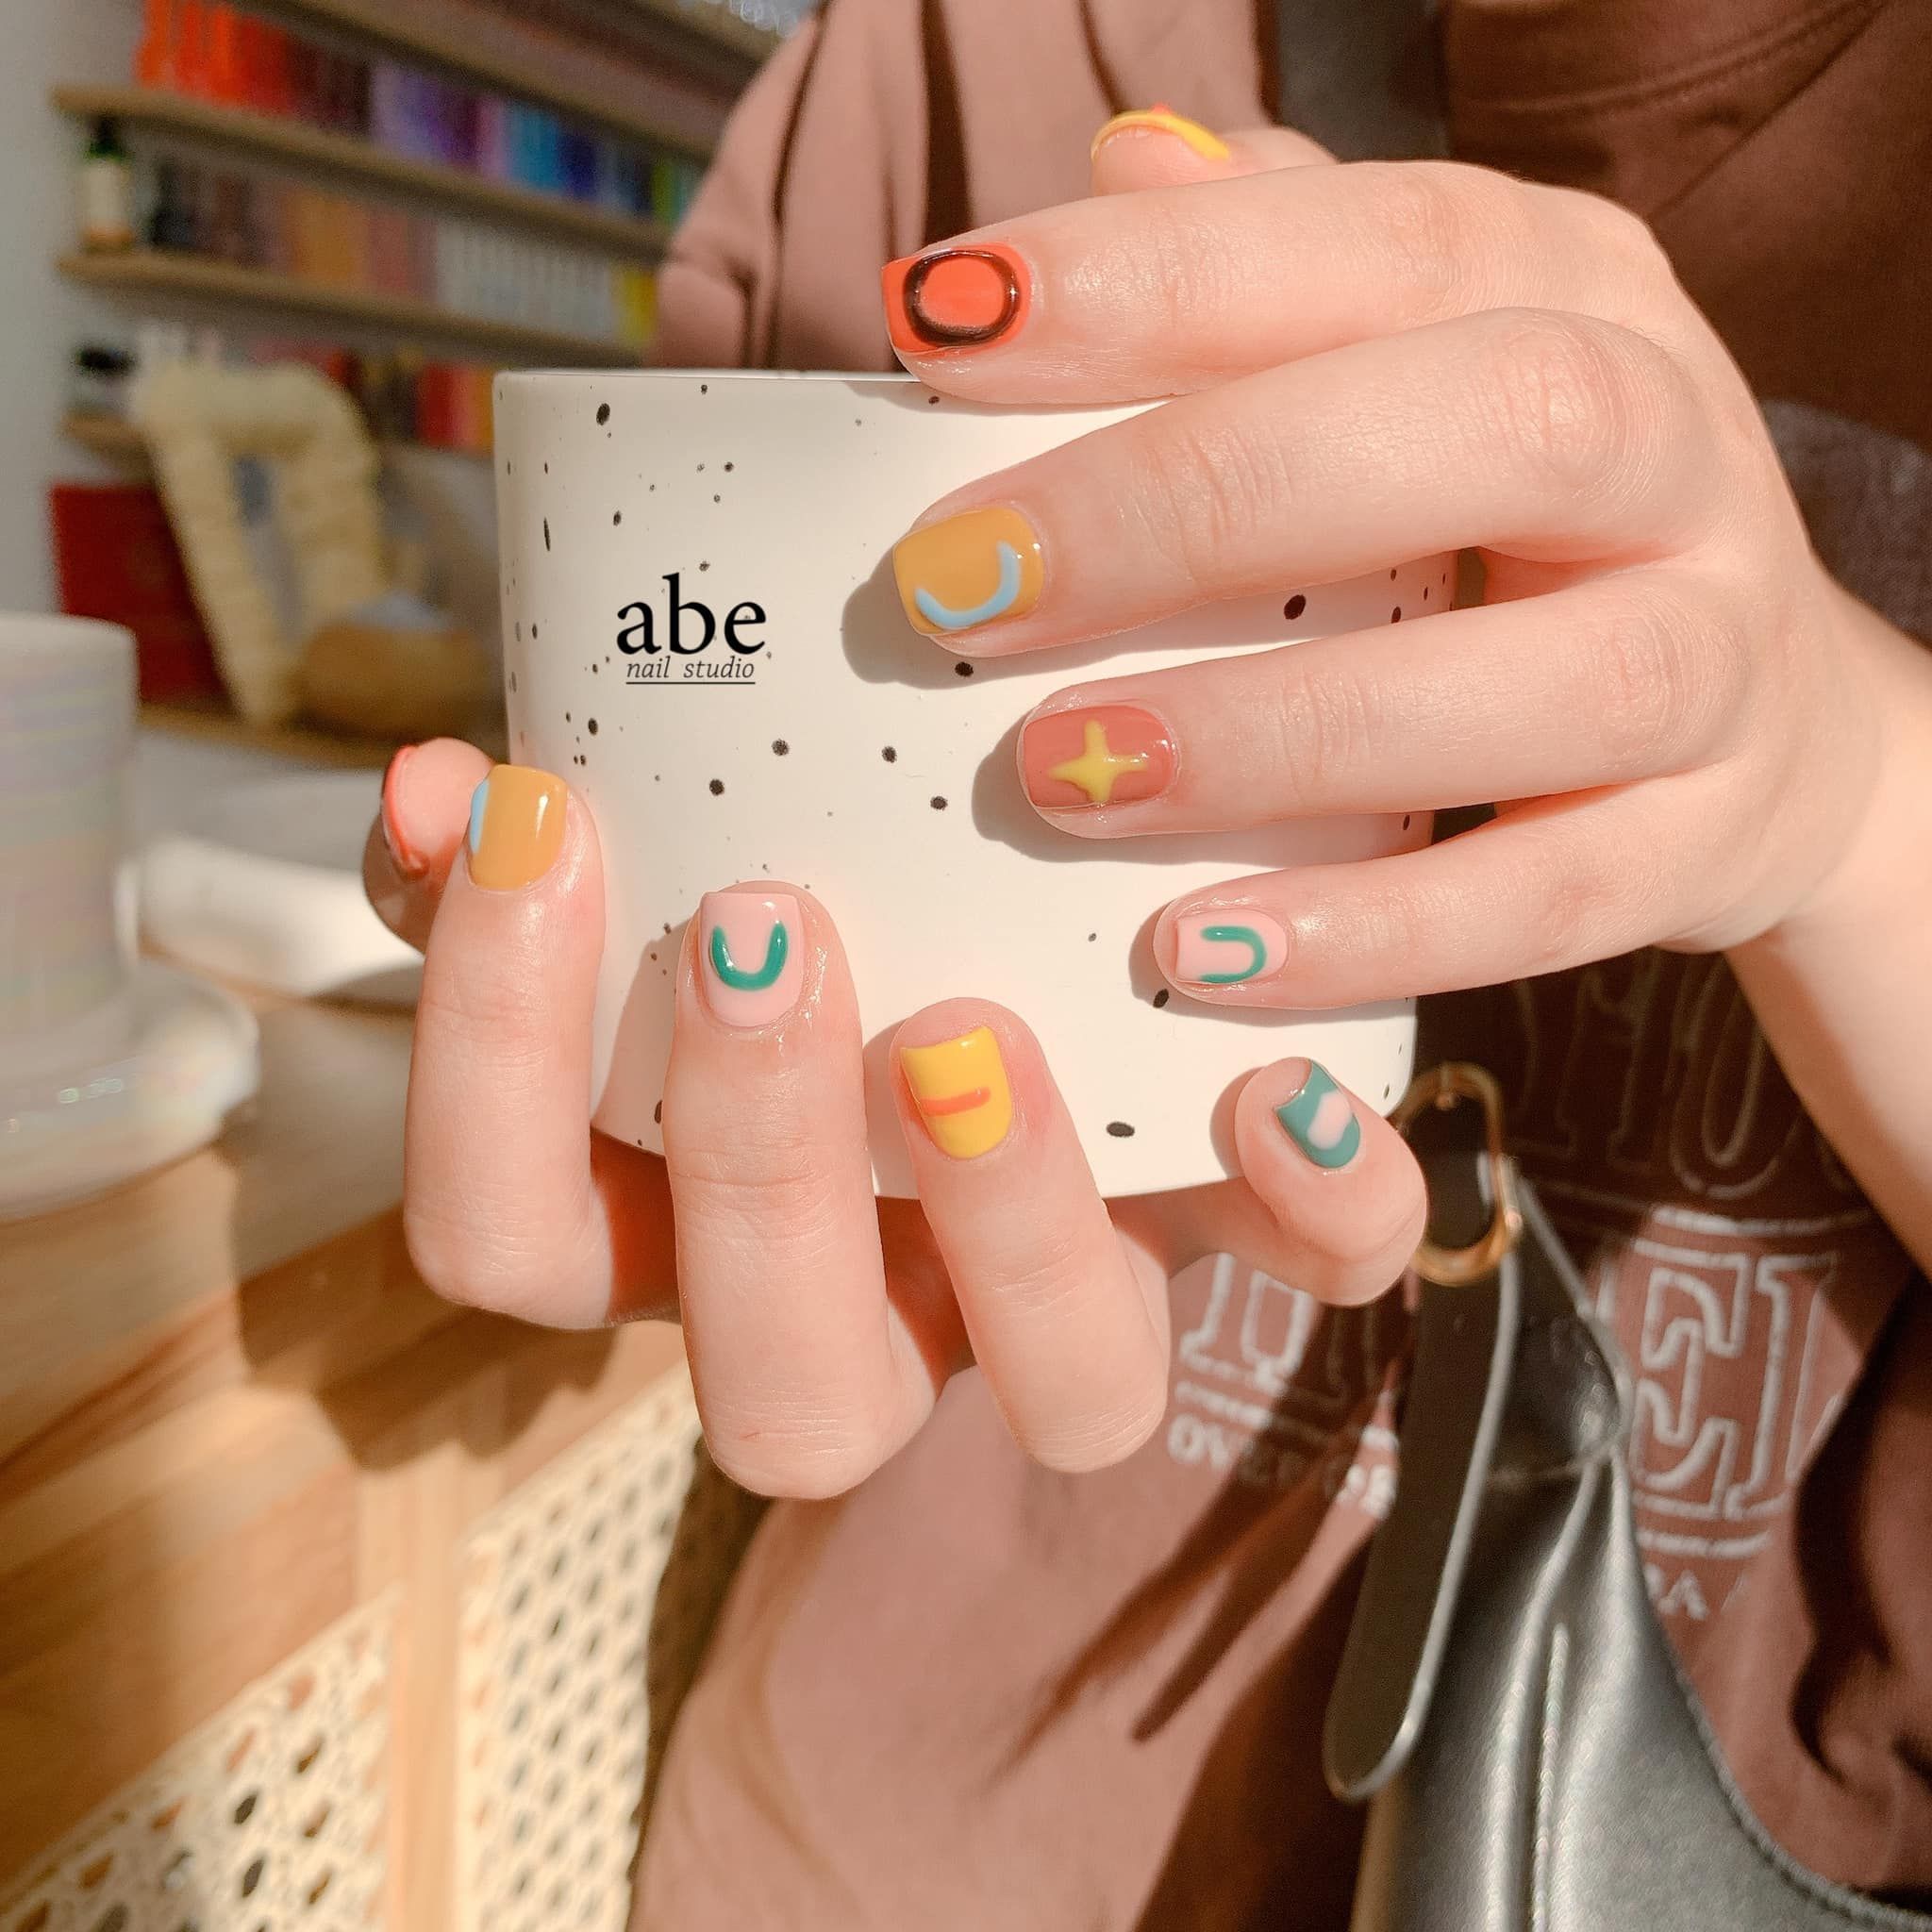 Abe nail studio